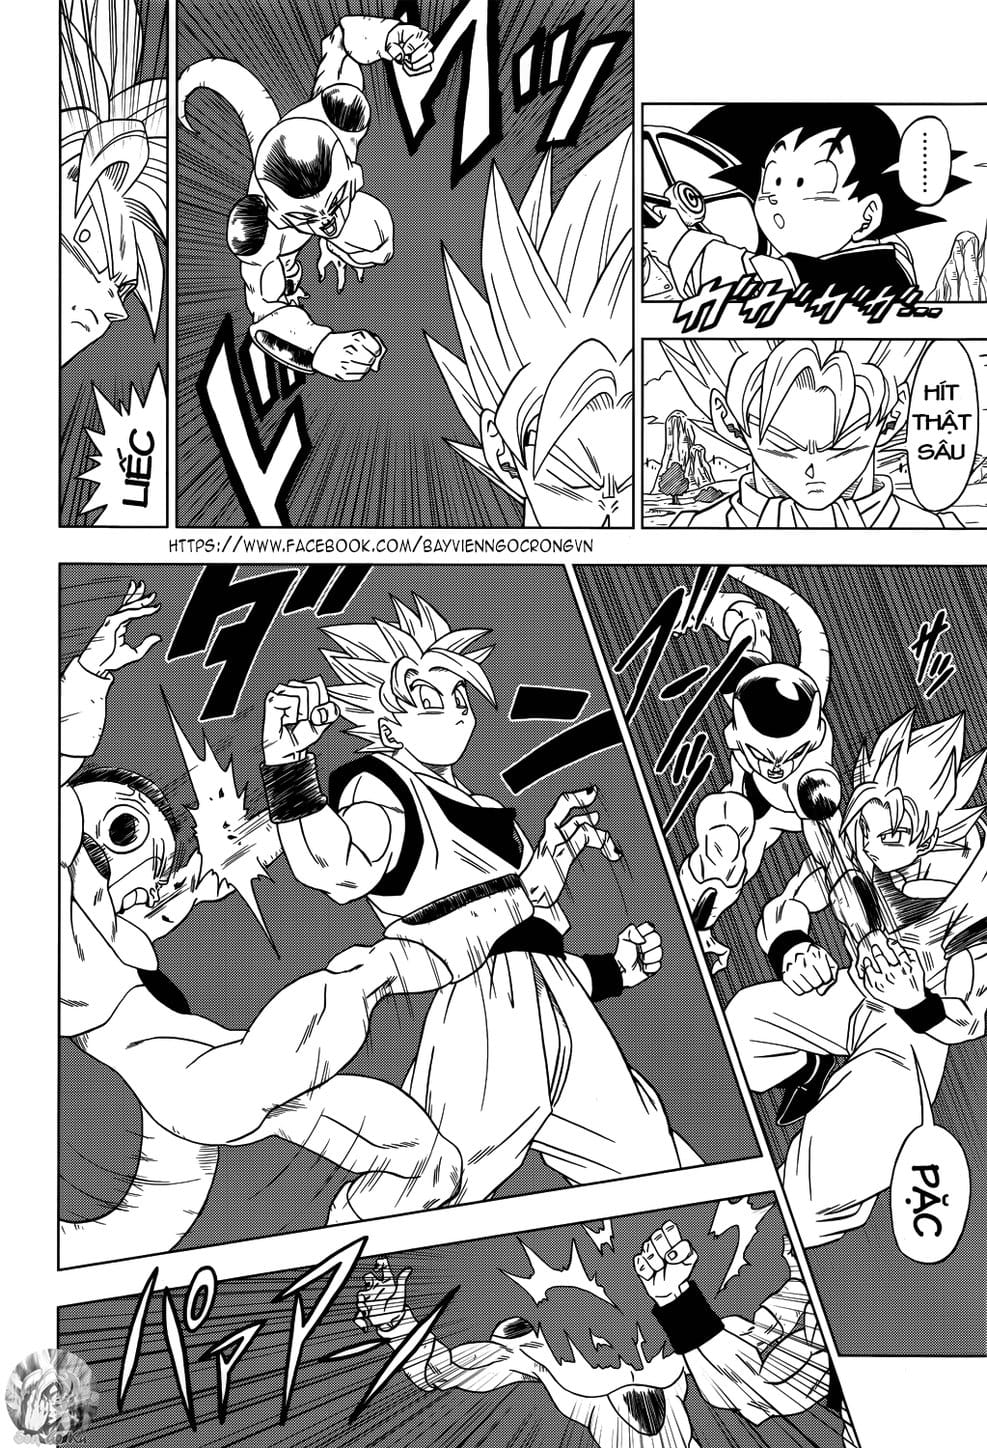 Truyện Tranh Truy Tìm Ngọc Rồng Siêu Cấp - Dragon Ball Super trang 4